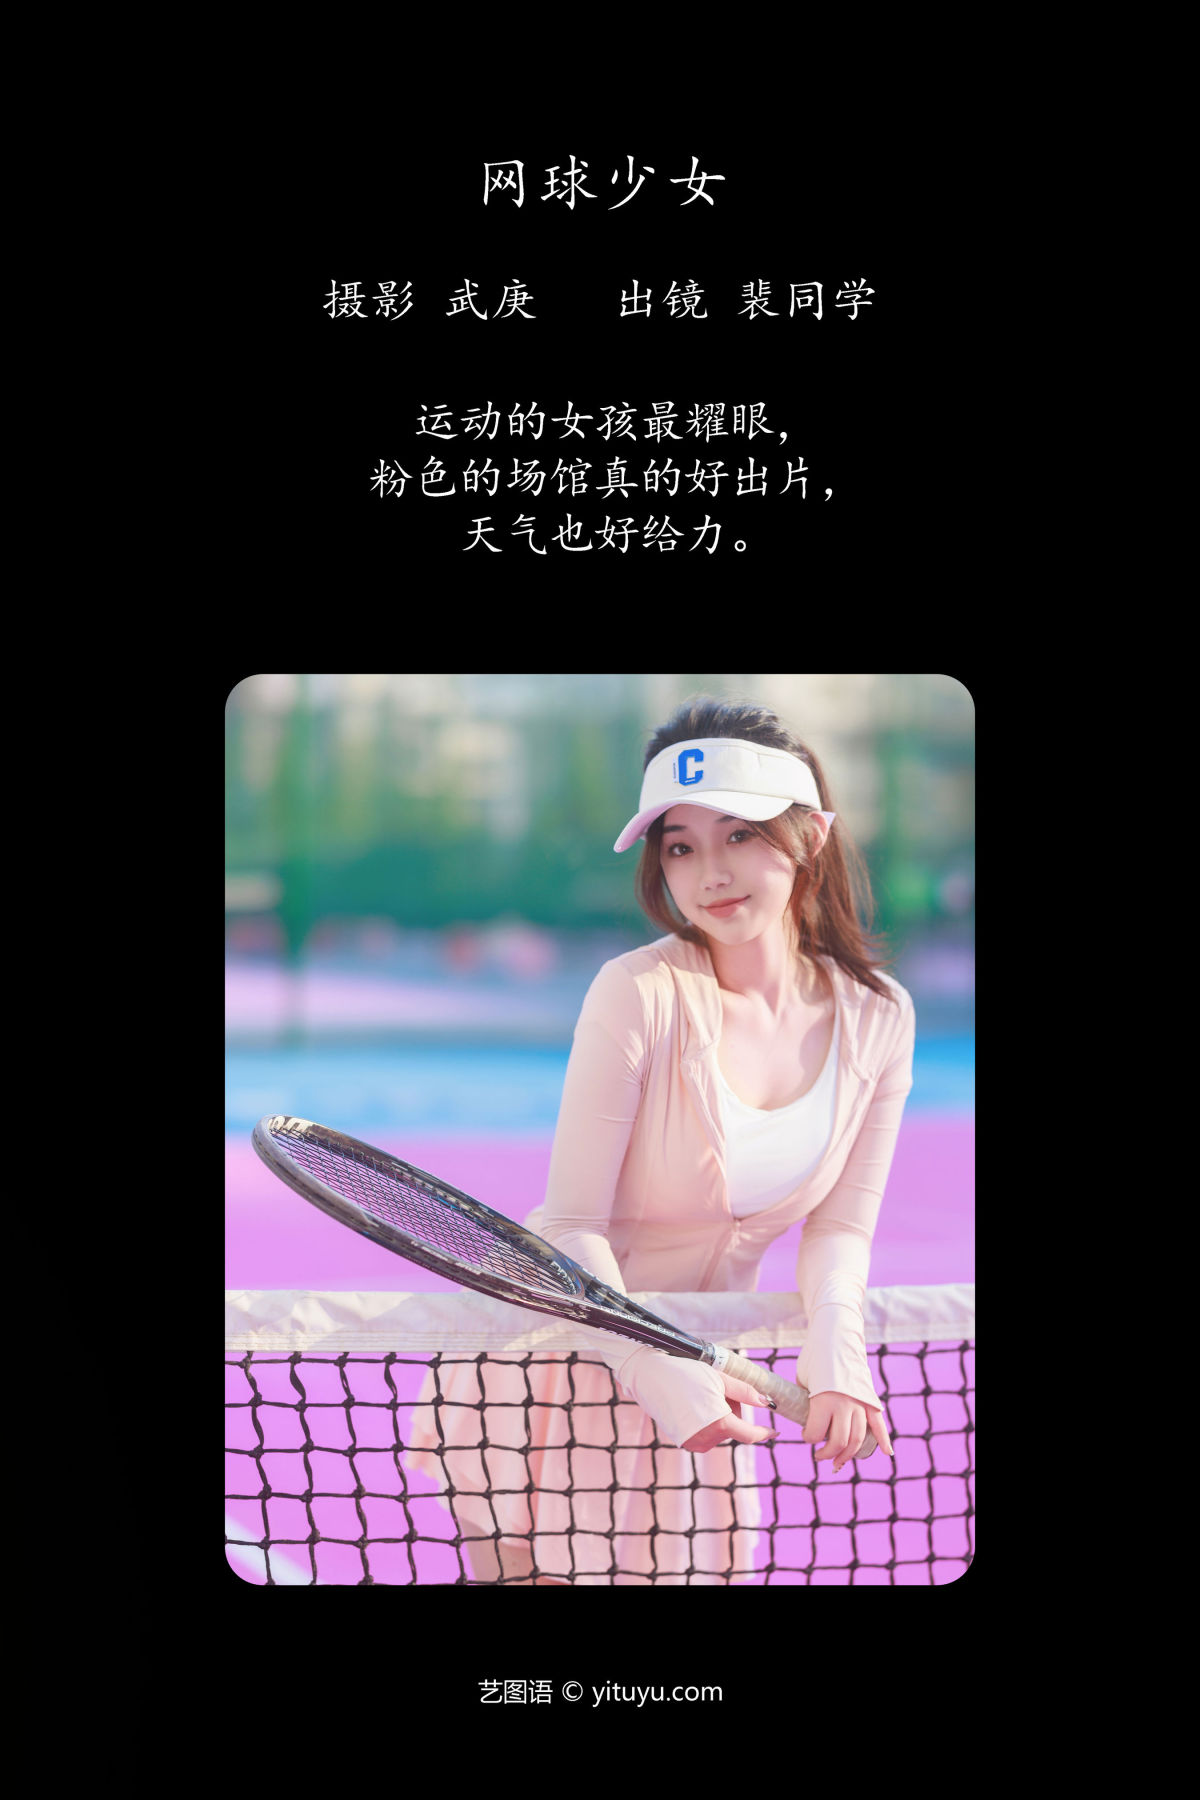 武庚_裴同学《网球少女》美图作品图片2